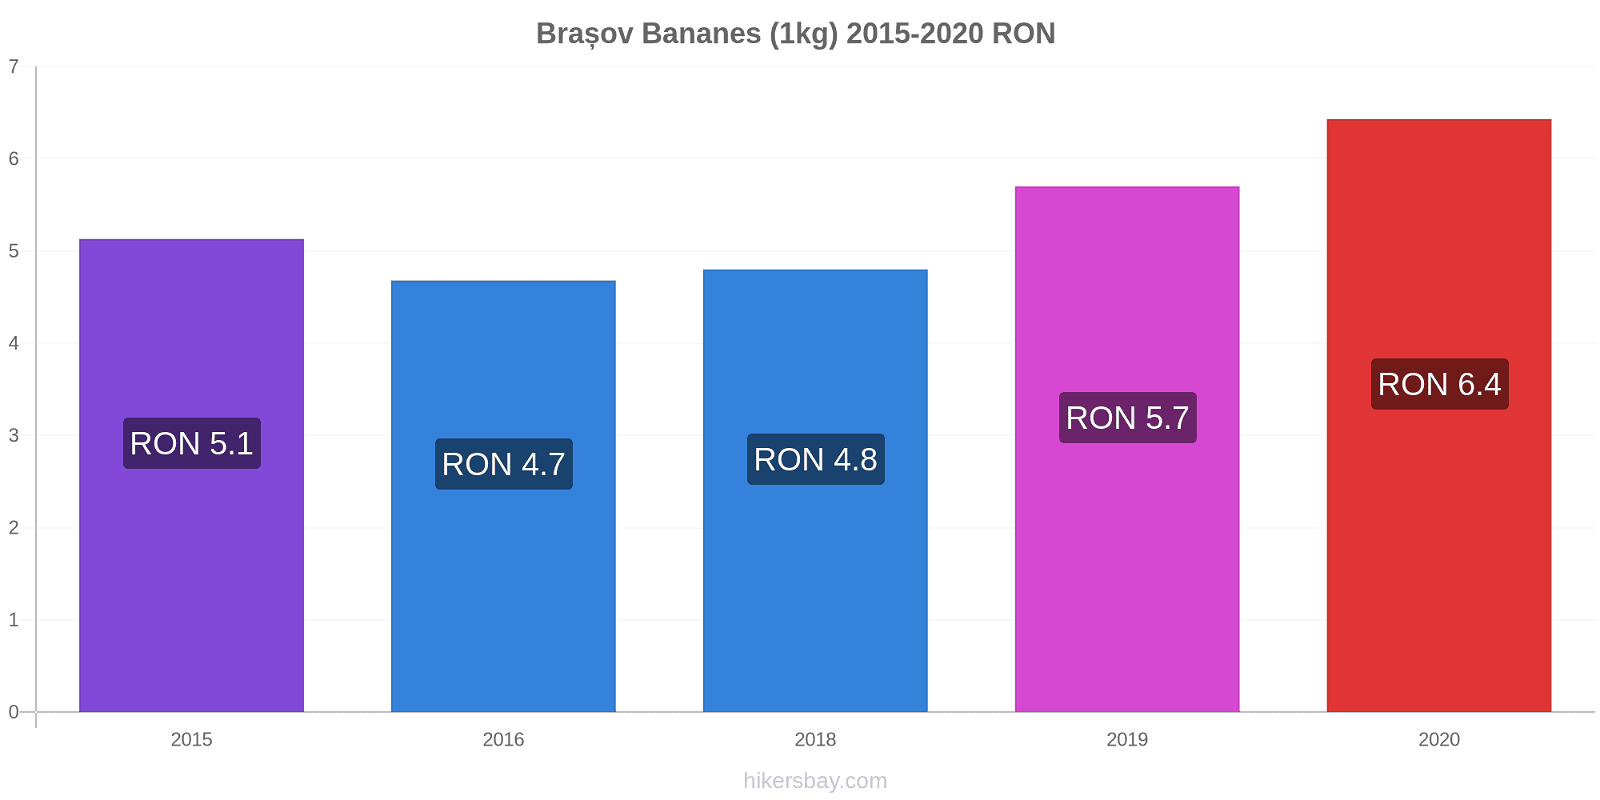 Brașov changements de prix Bananes (1kg) hikersbay.com